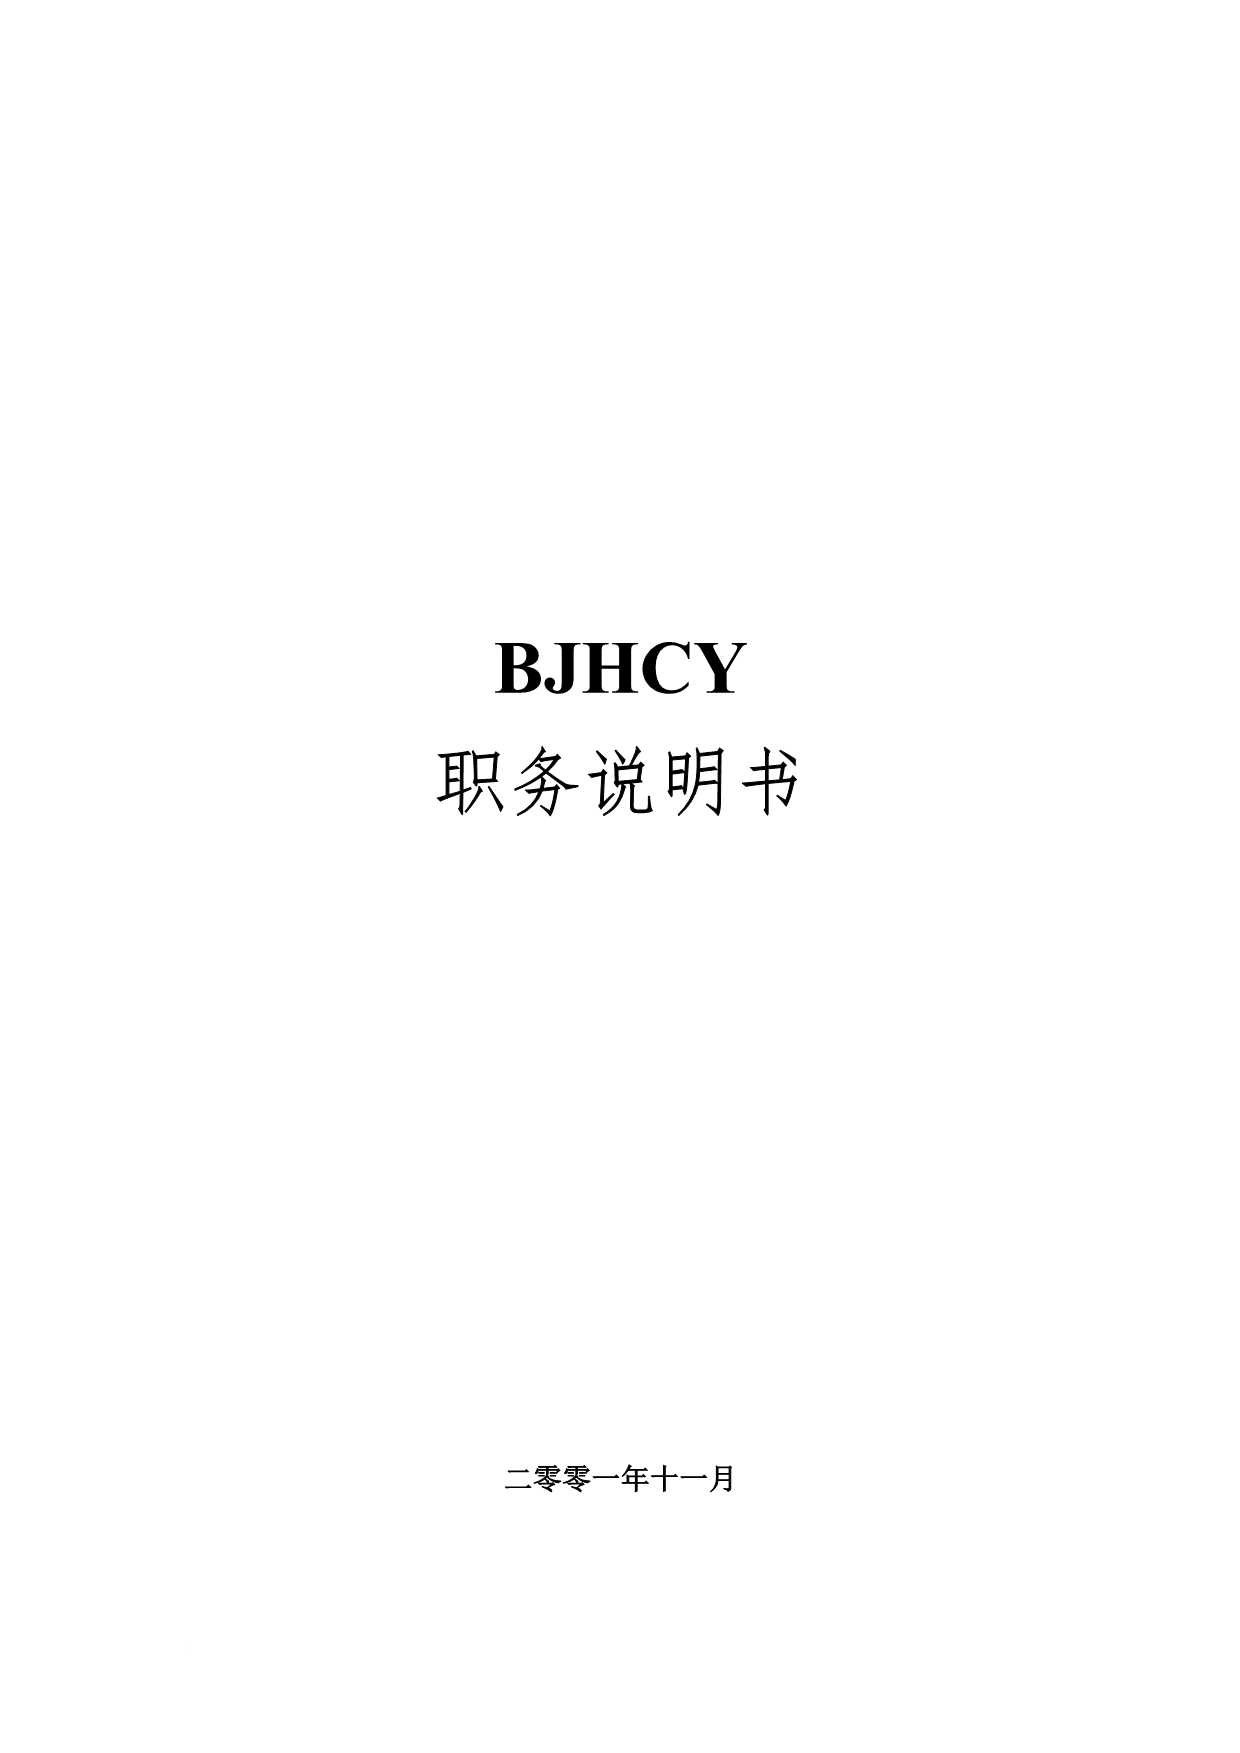 岗位职责_bjhcy职务说明_第1页